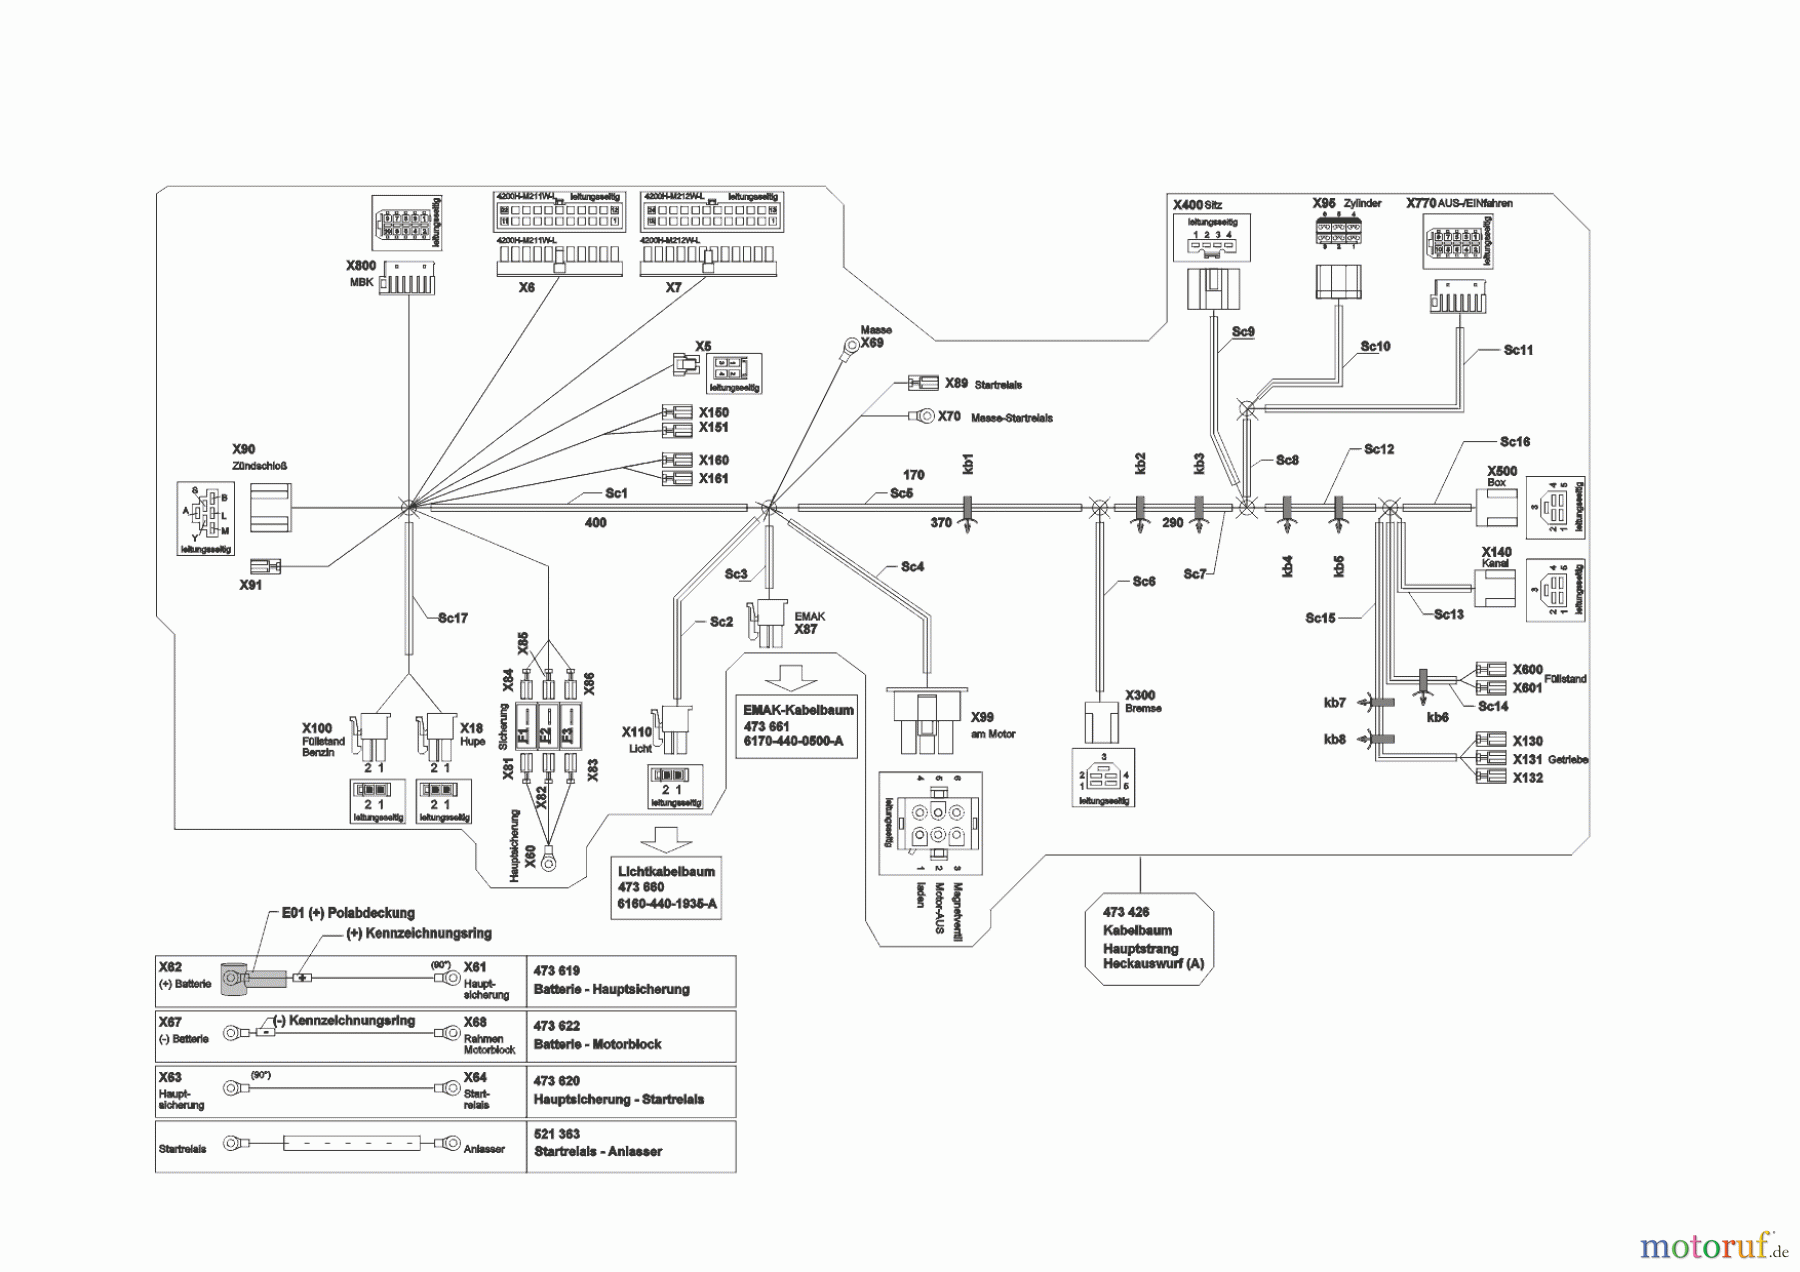  Powerline Gartentechnik Rasentraktor  T23-125.4 HD V2  09/2014 - 06/2015 Seite 10